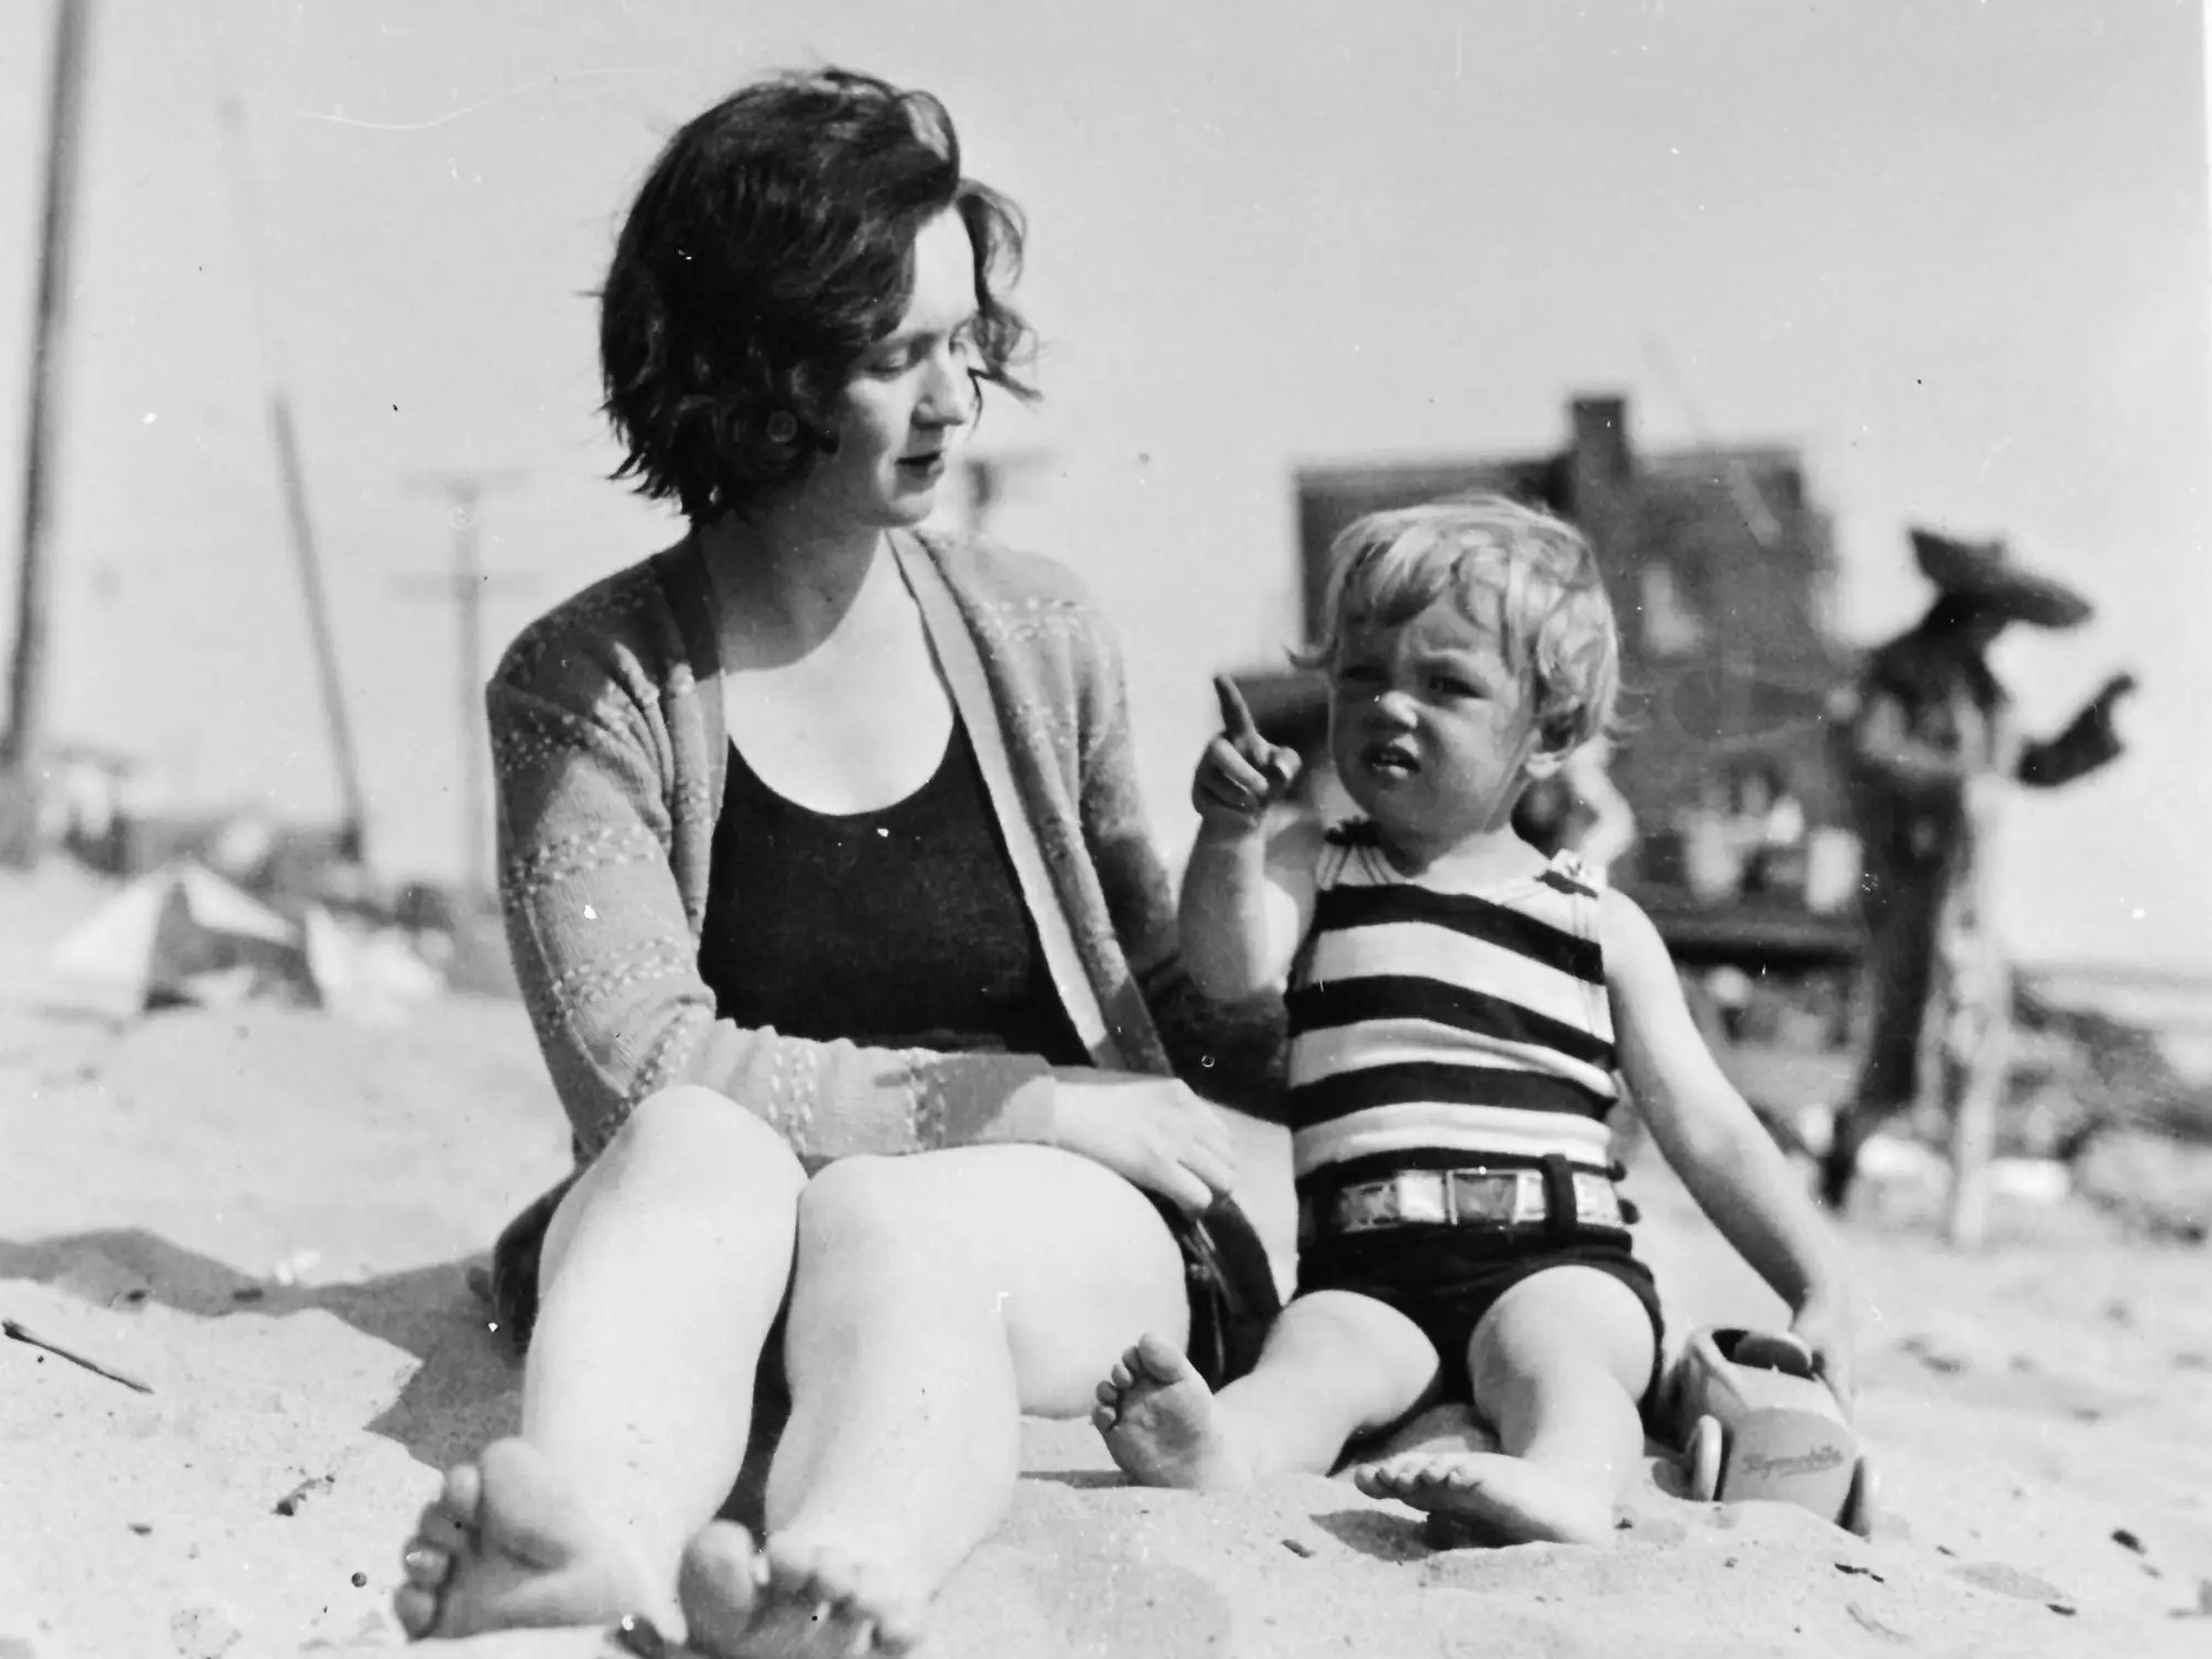 Norma Jeane Baker, nombre real de Marilyn Monroe, en la playa cuando era niña junto a su madre Gladys Baker, alrededor de 1929.